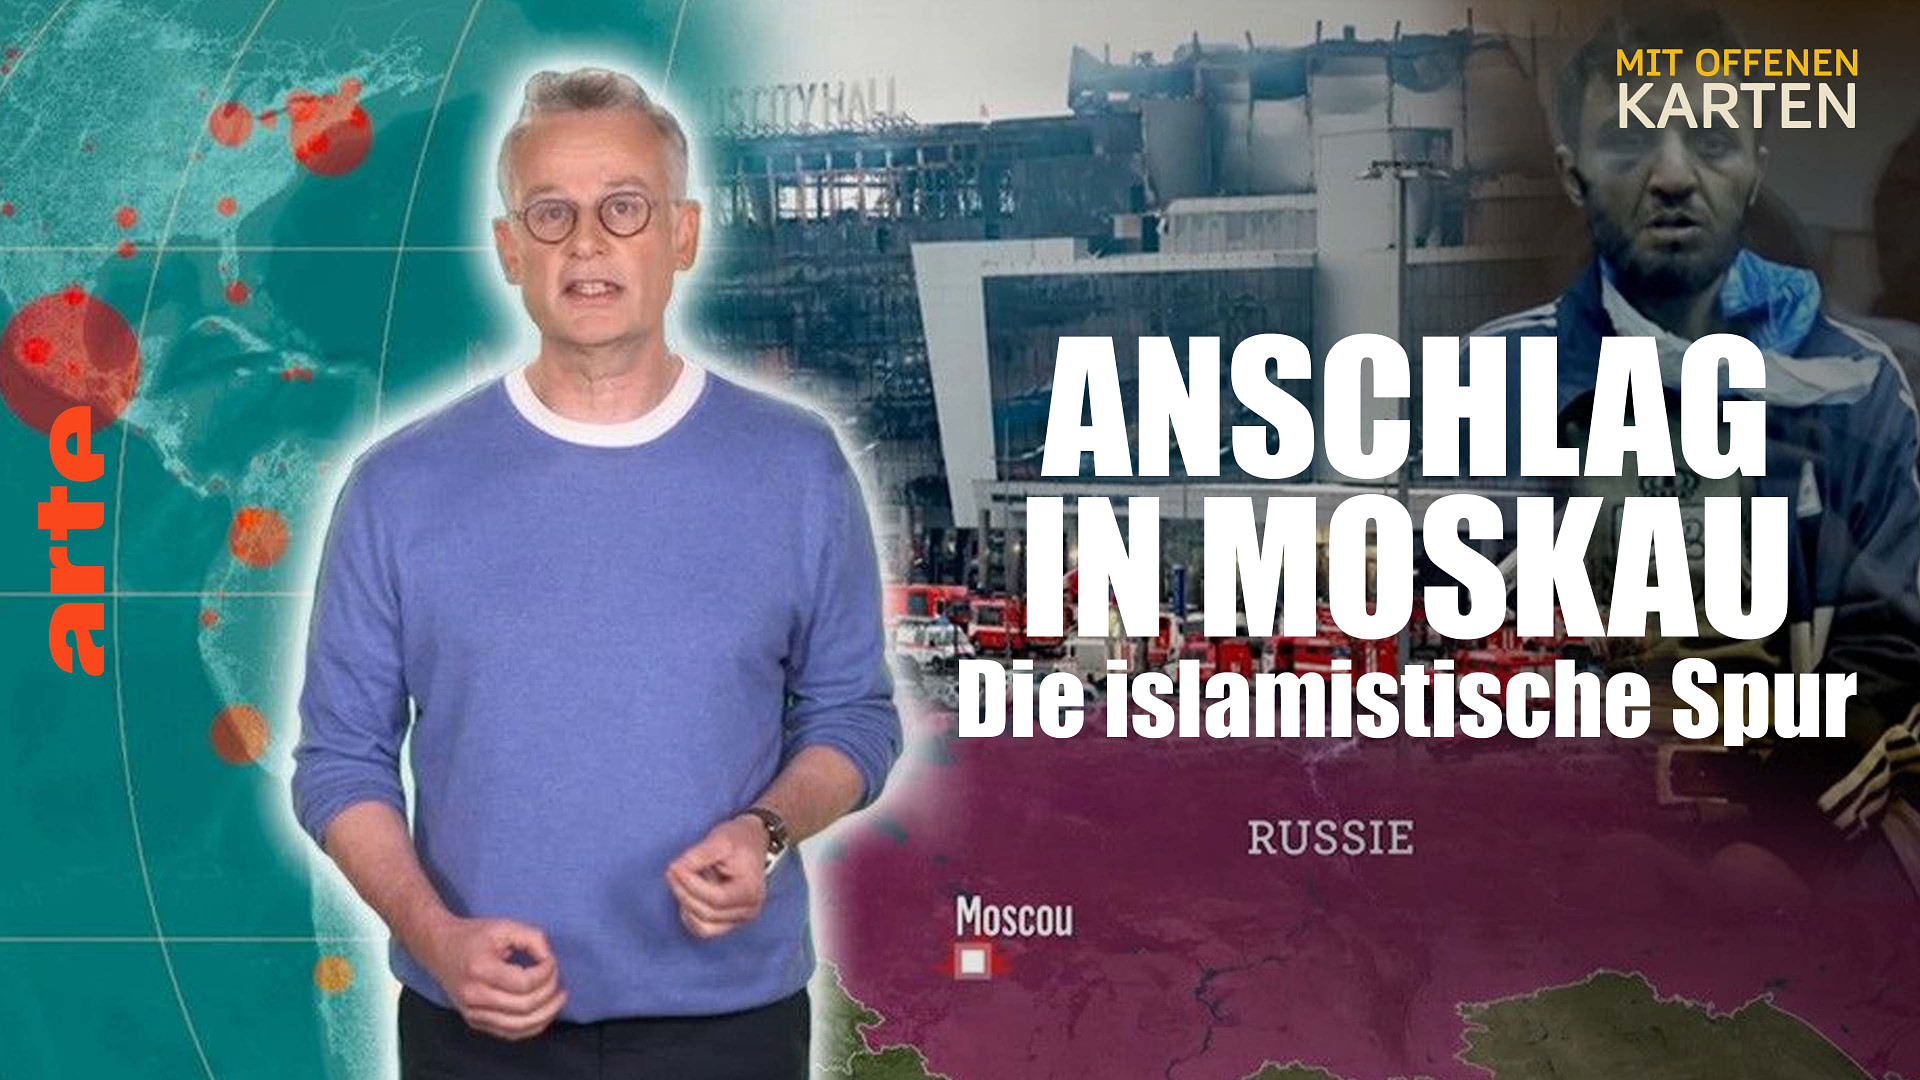 Anschlag in Moskau: Die islamistische Spur